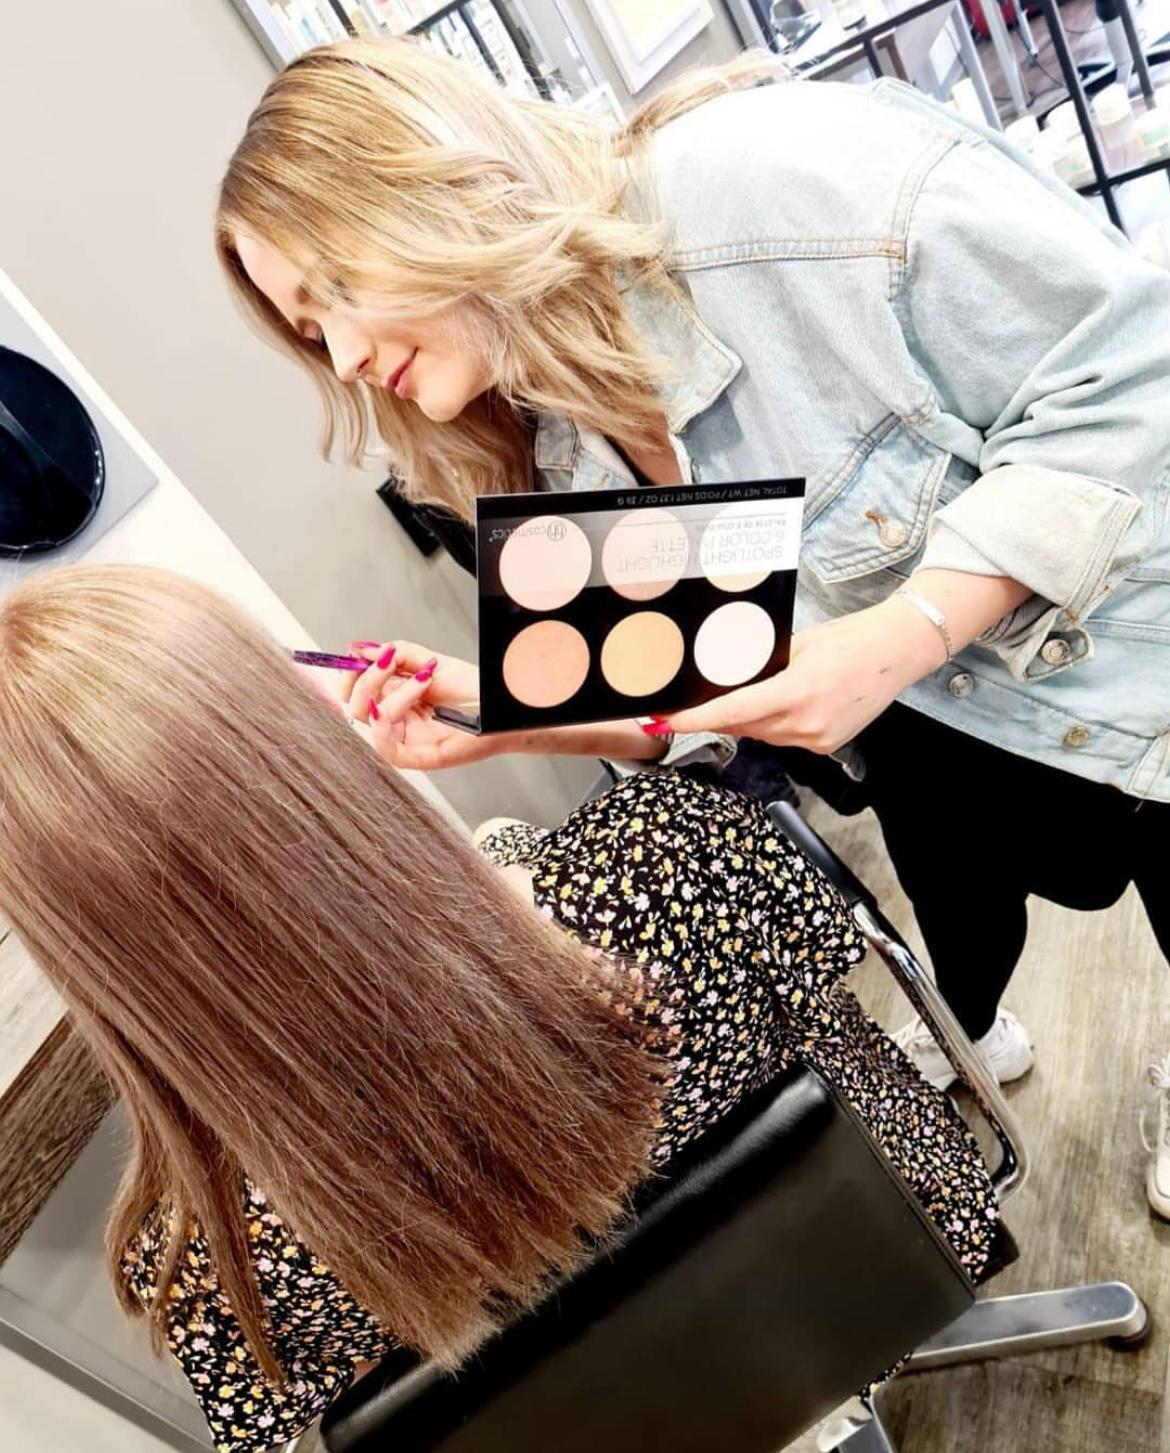 Kundenbild groß 2 THE LOOK Hair & Make -Up by Kathy